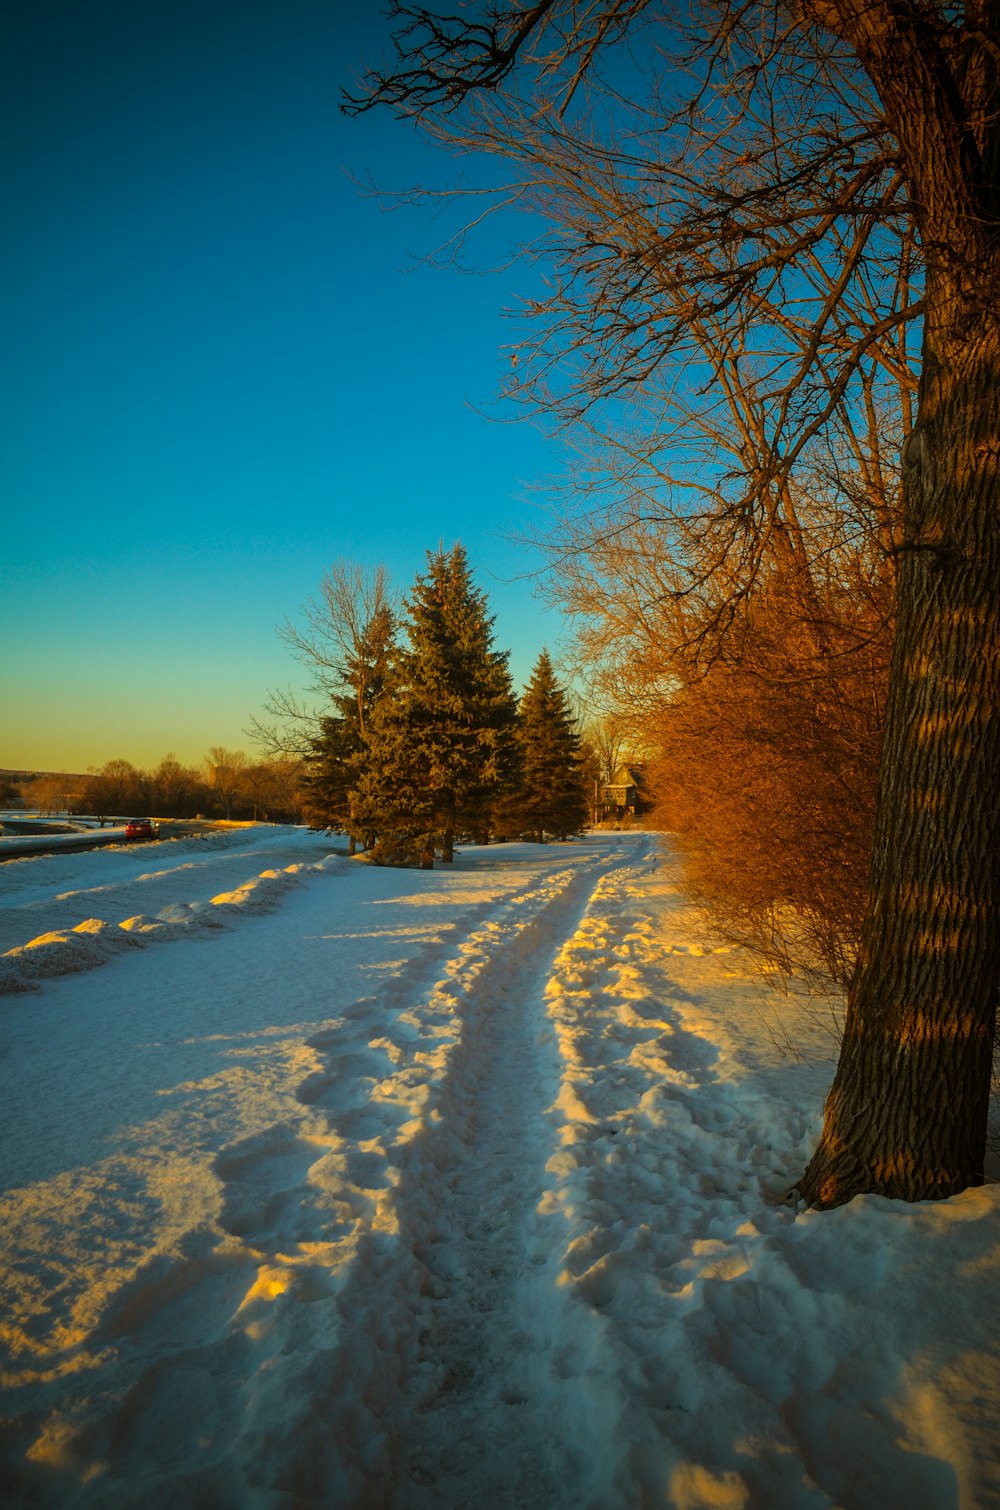 braune Bäume tagsüber auf schneebedecktem Boden unter blauem Himmel